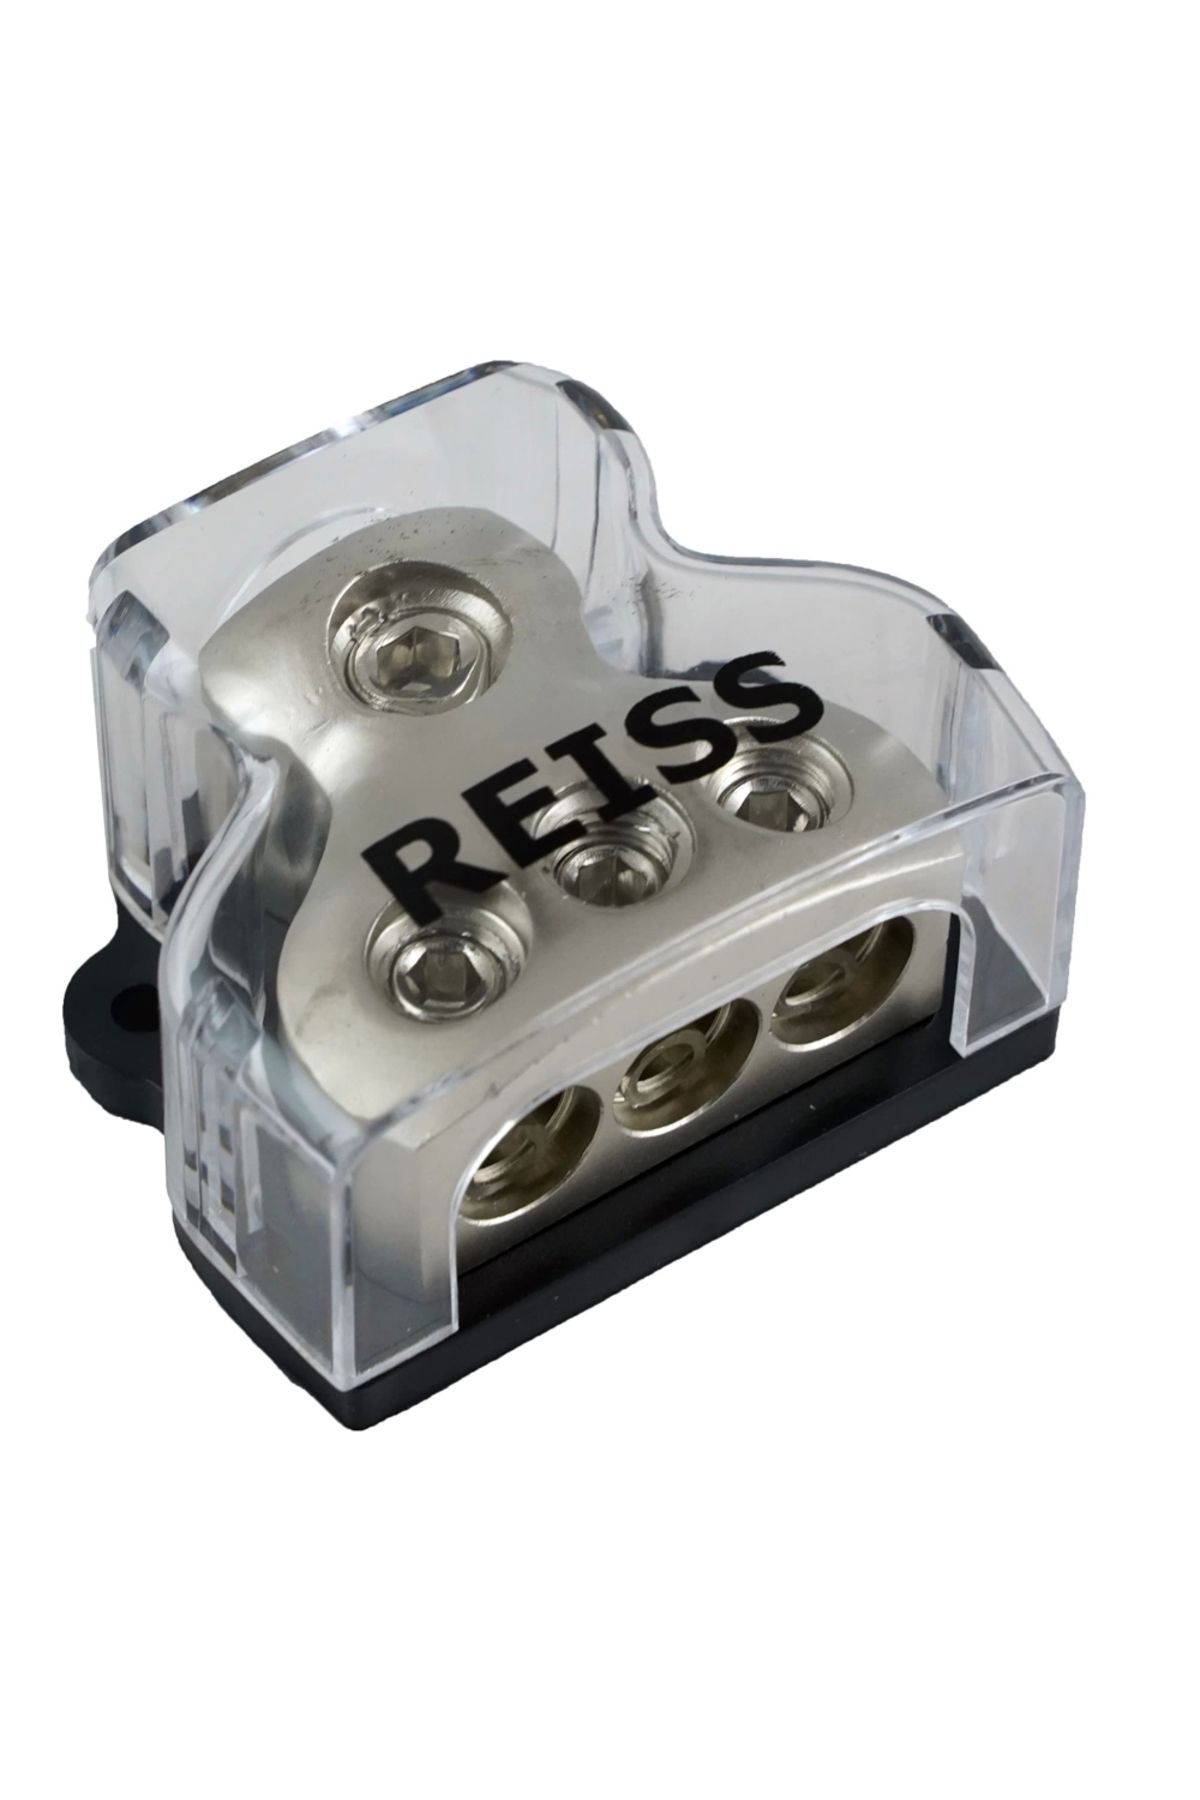 Reiss Amfi Blok Dağıtıcı – Reiss RS-DB7 – 1 Giriş 3 Çıkış Anfi Kablo Dağıtıcı Blok